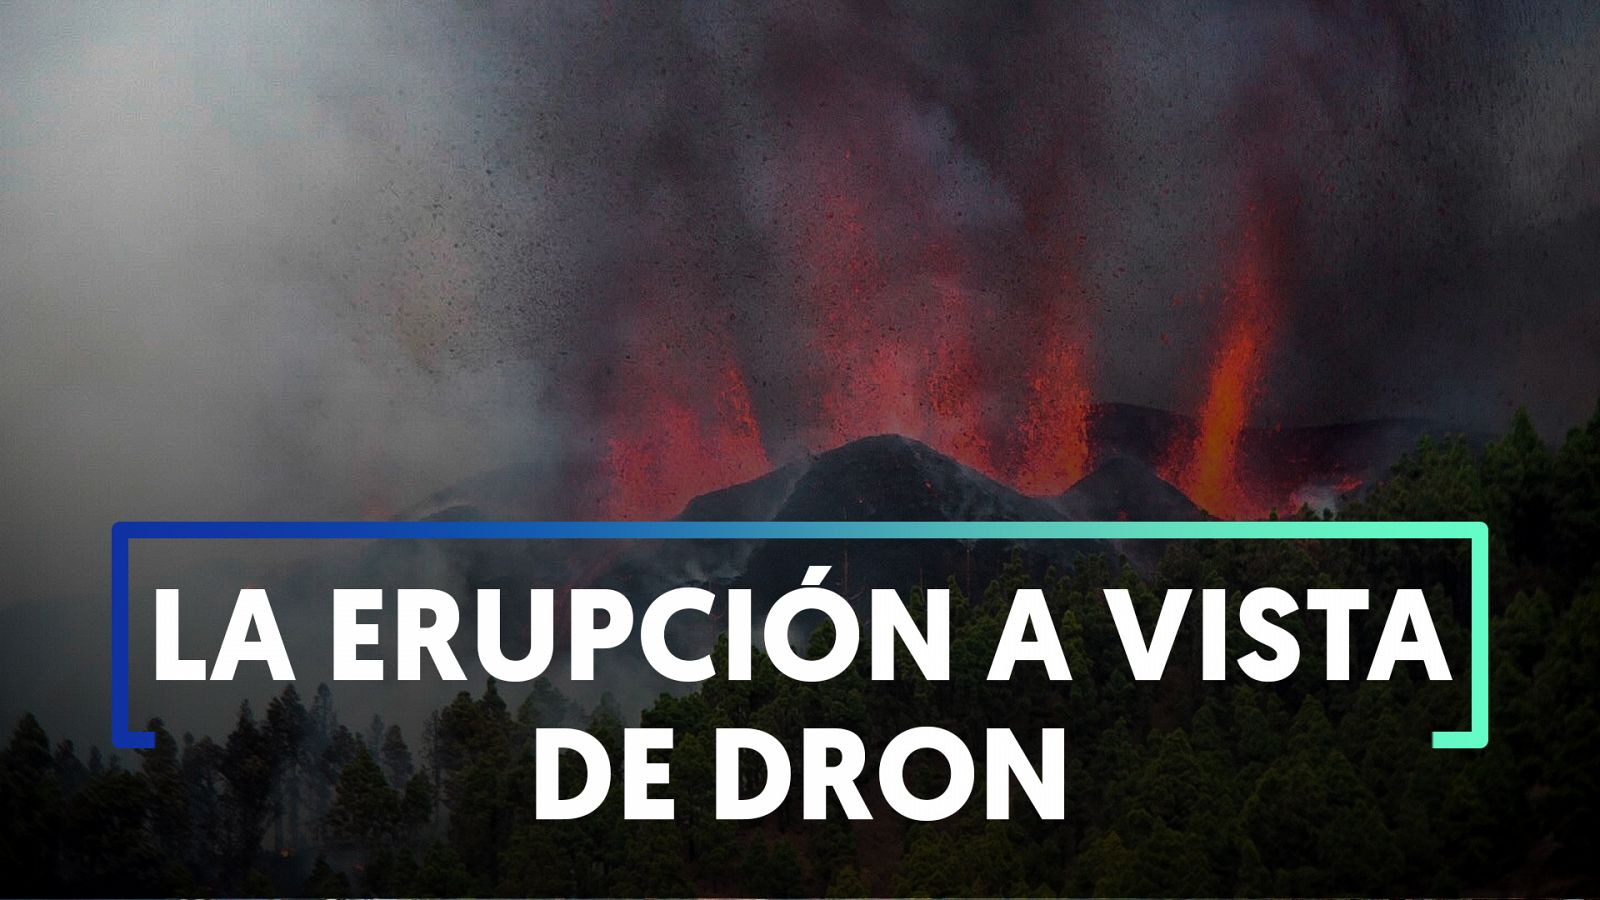 La erupción volcánica en La Palma a vista de dron - Ver ahora